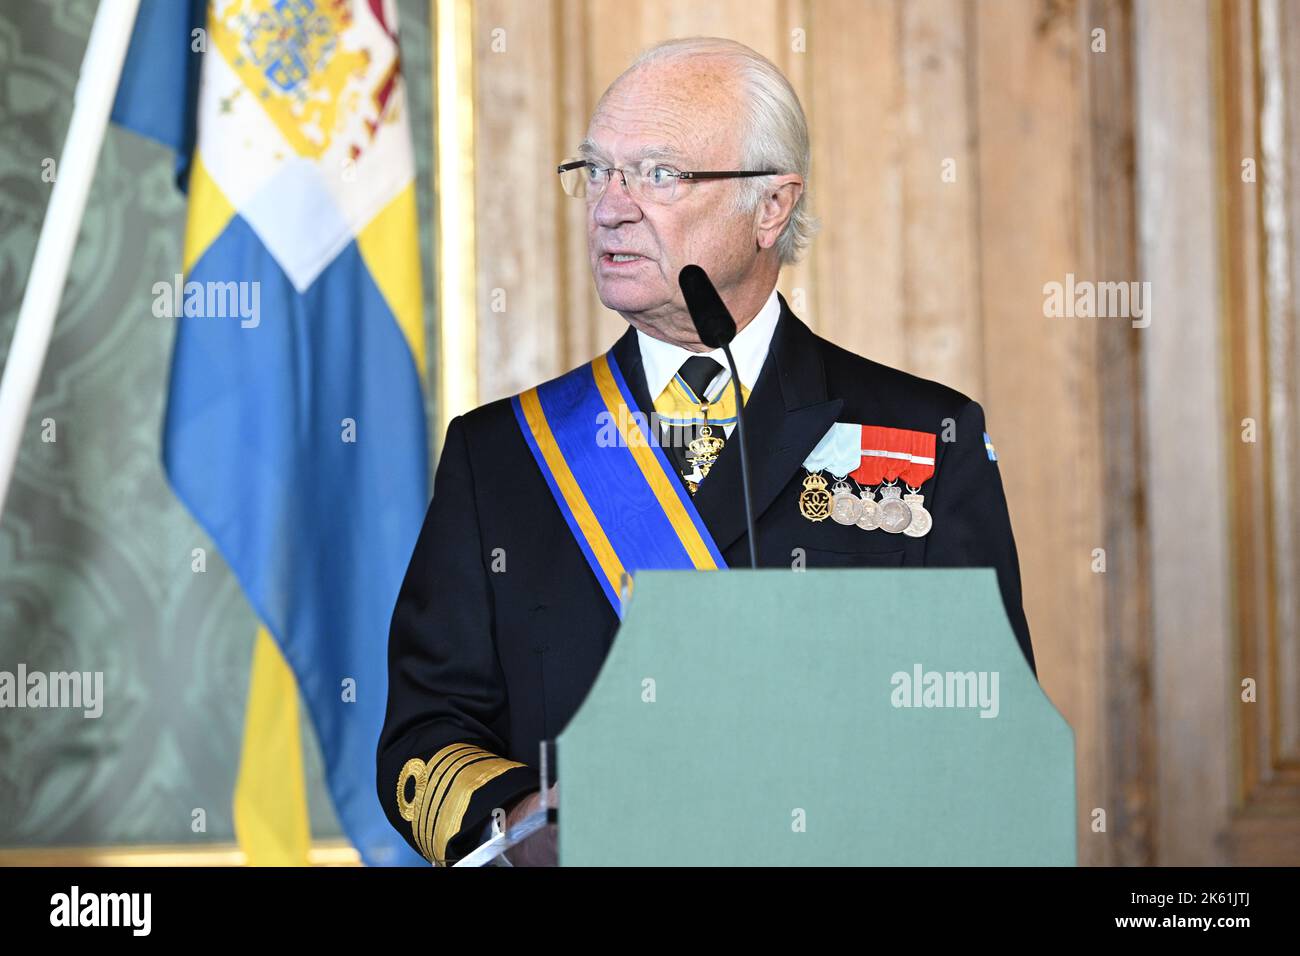 König Carl Gustaf gibt am 11. Oktober 2022 im Speisesaal von Königin Lovisa Ulrika, Stockholm, Schweden, eine Presseerklärung ab. Foto: Henrik Montgomery / TT / Code 10060 Stockfoto